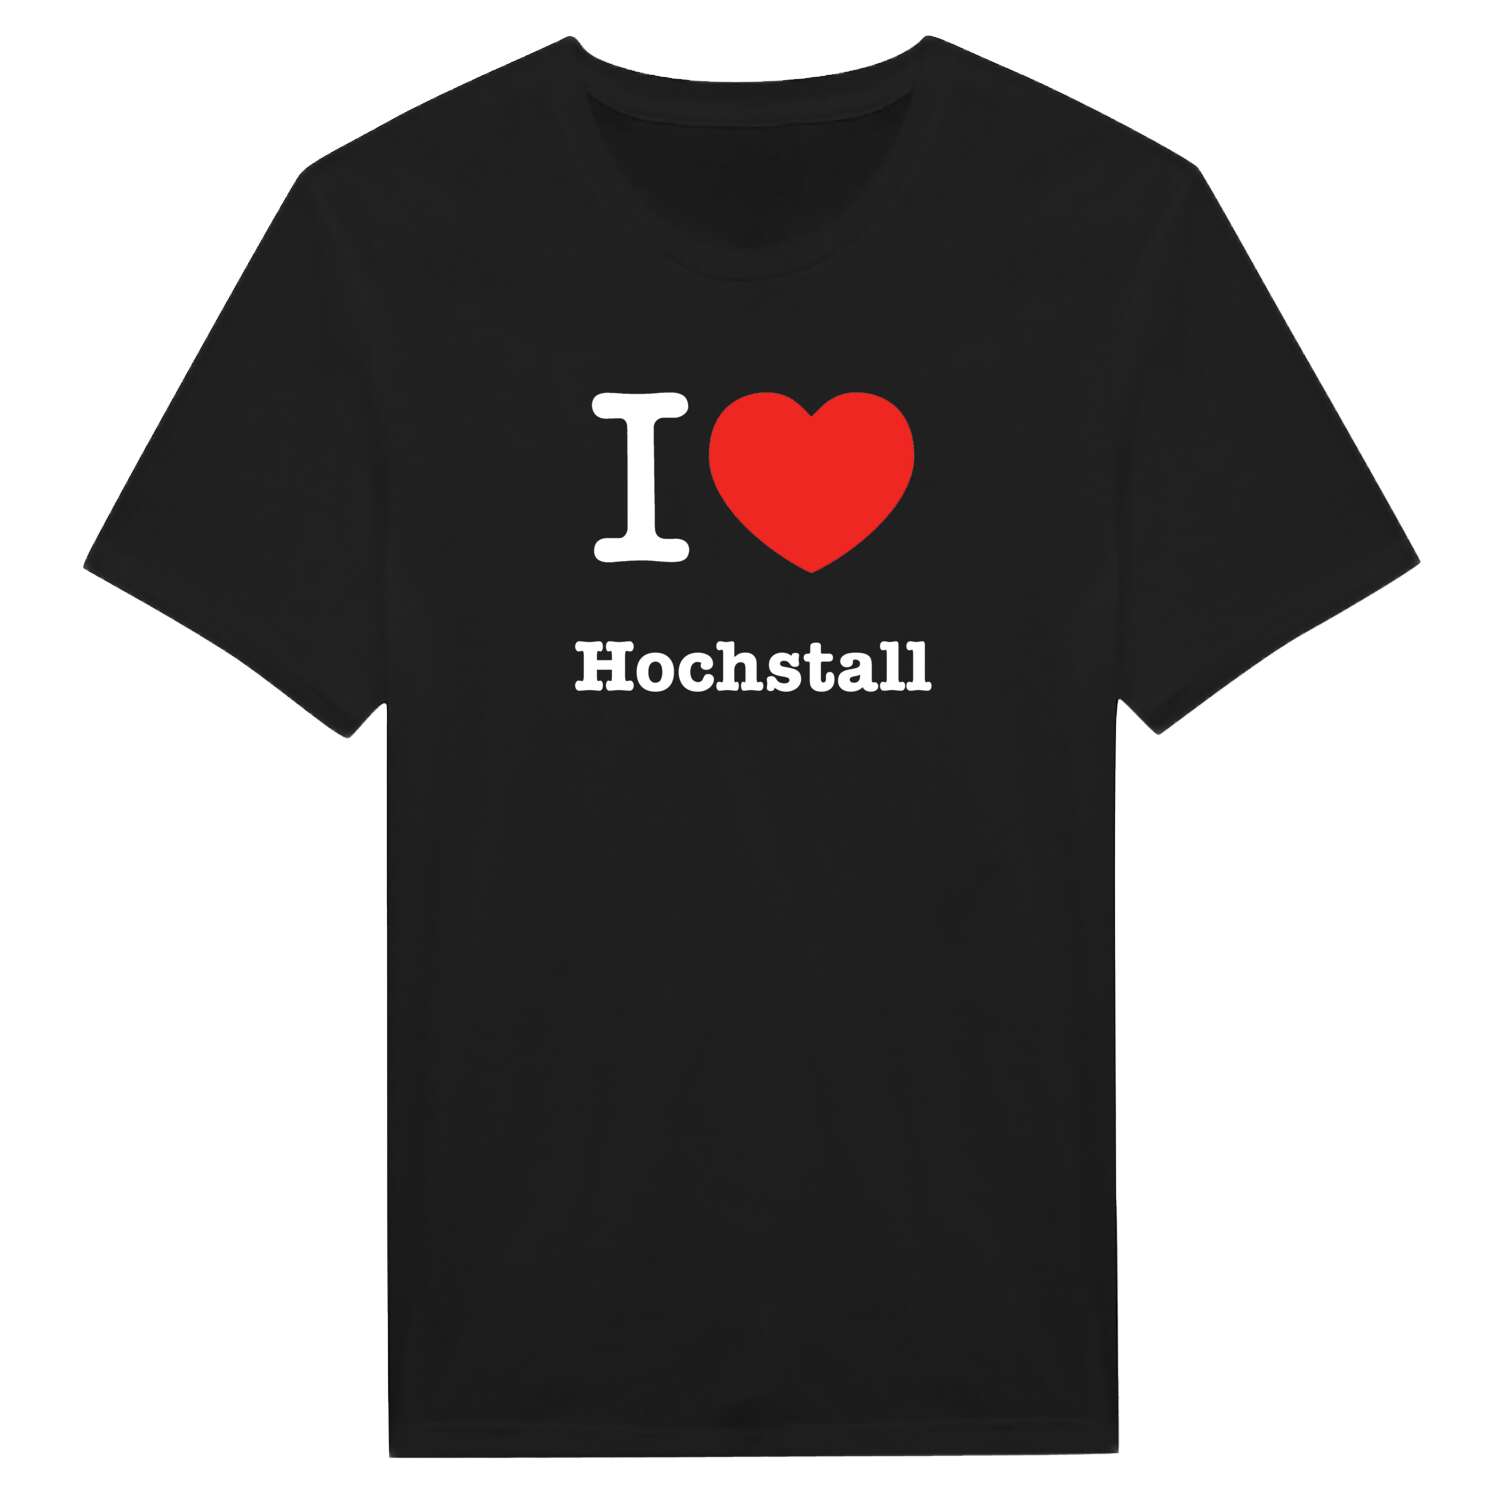 Hochstall T-Shirt »I love«